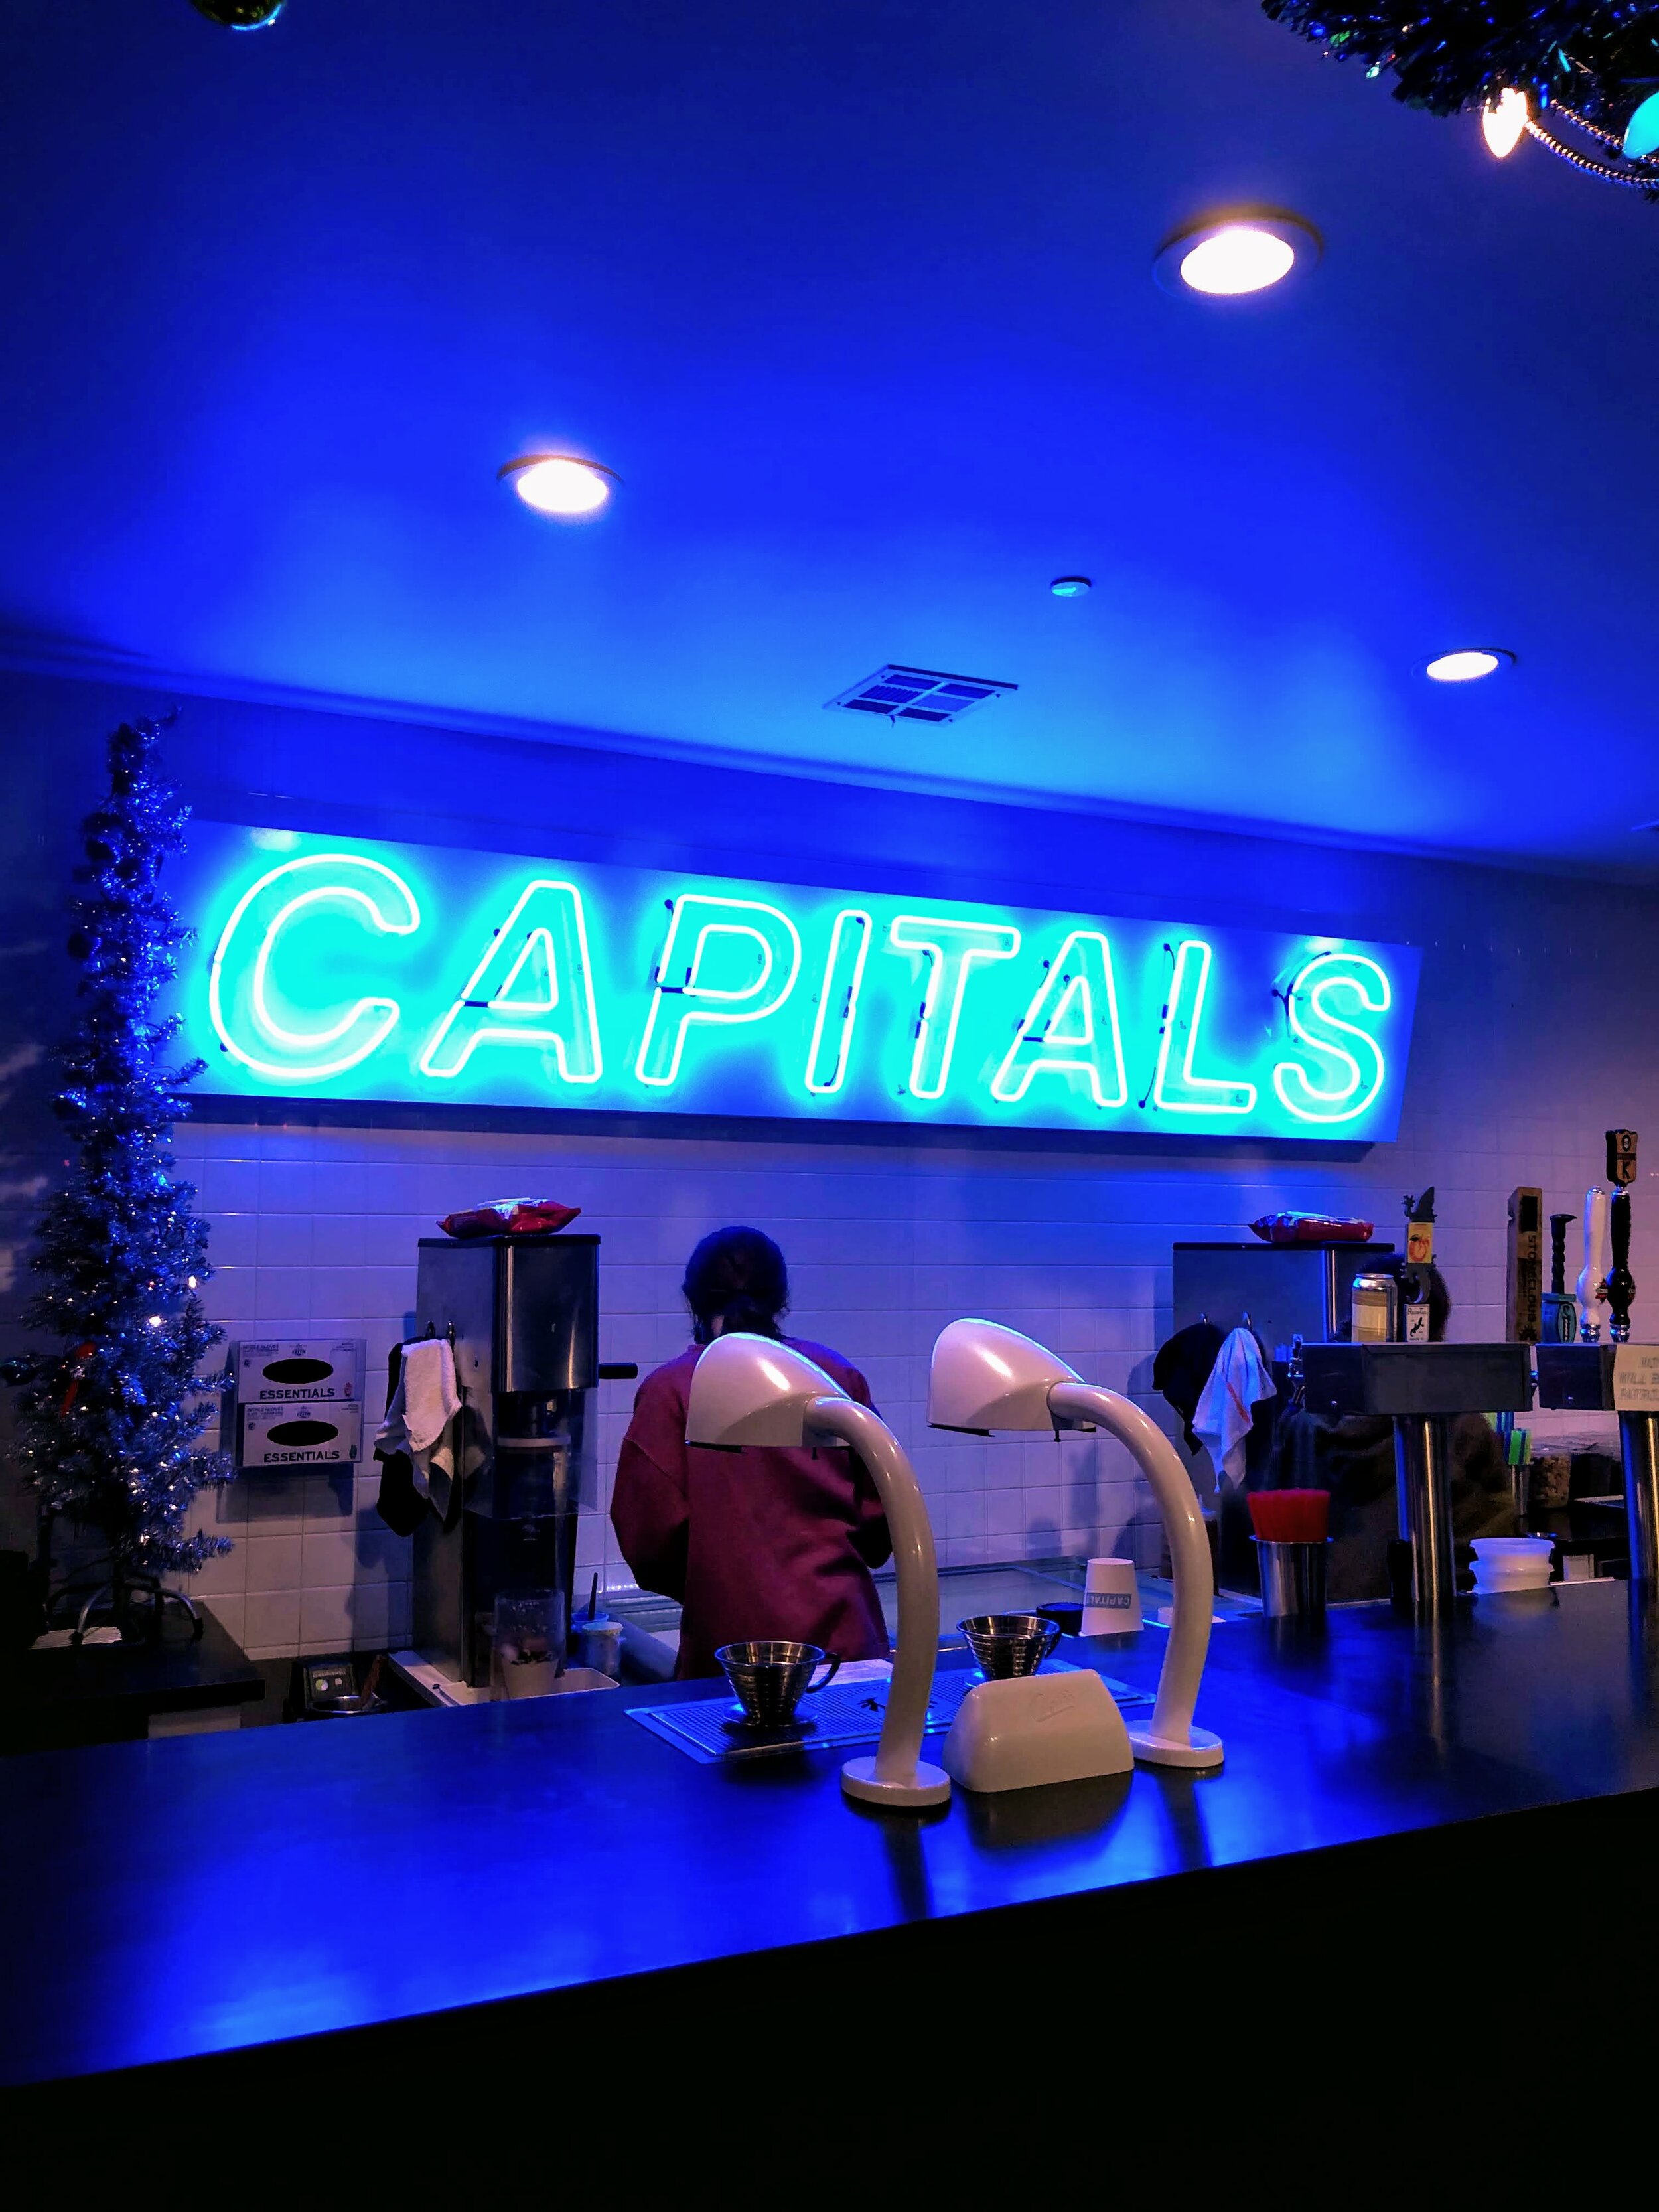 Capitals Ice Cream in Oklahoma City, Oklahoma